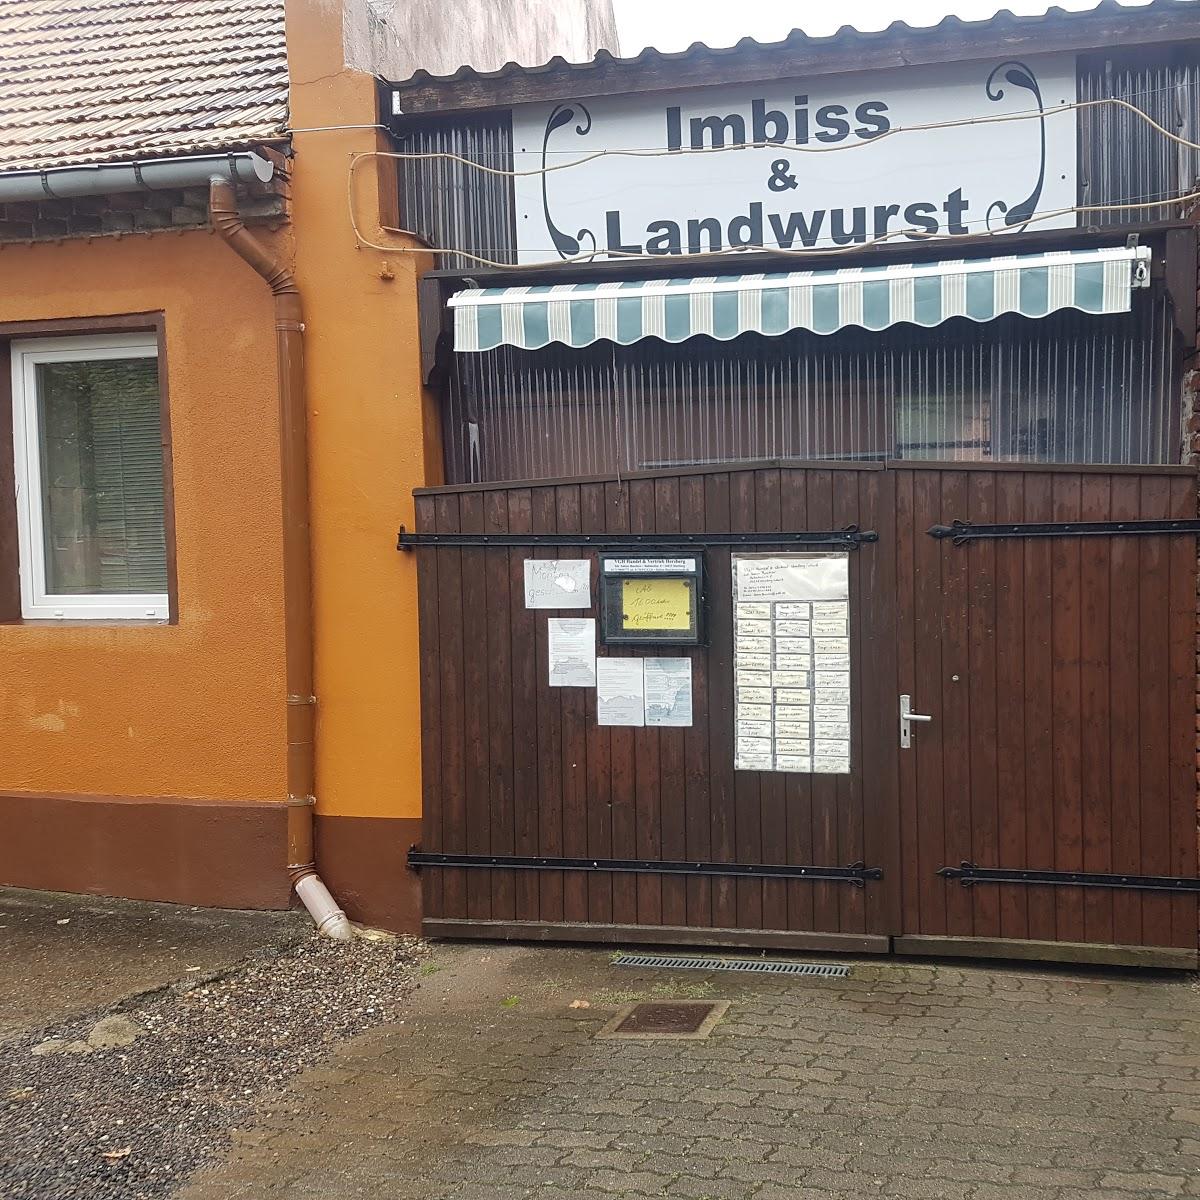 Restaurant "Landwurst & Imbiss" in Herzberg (Mark)